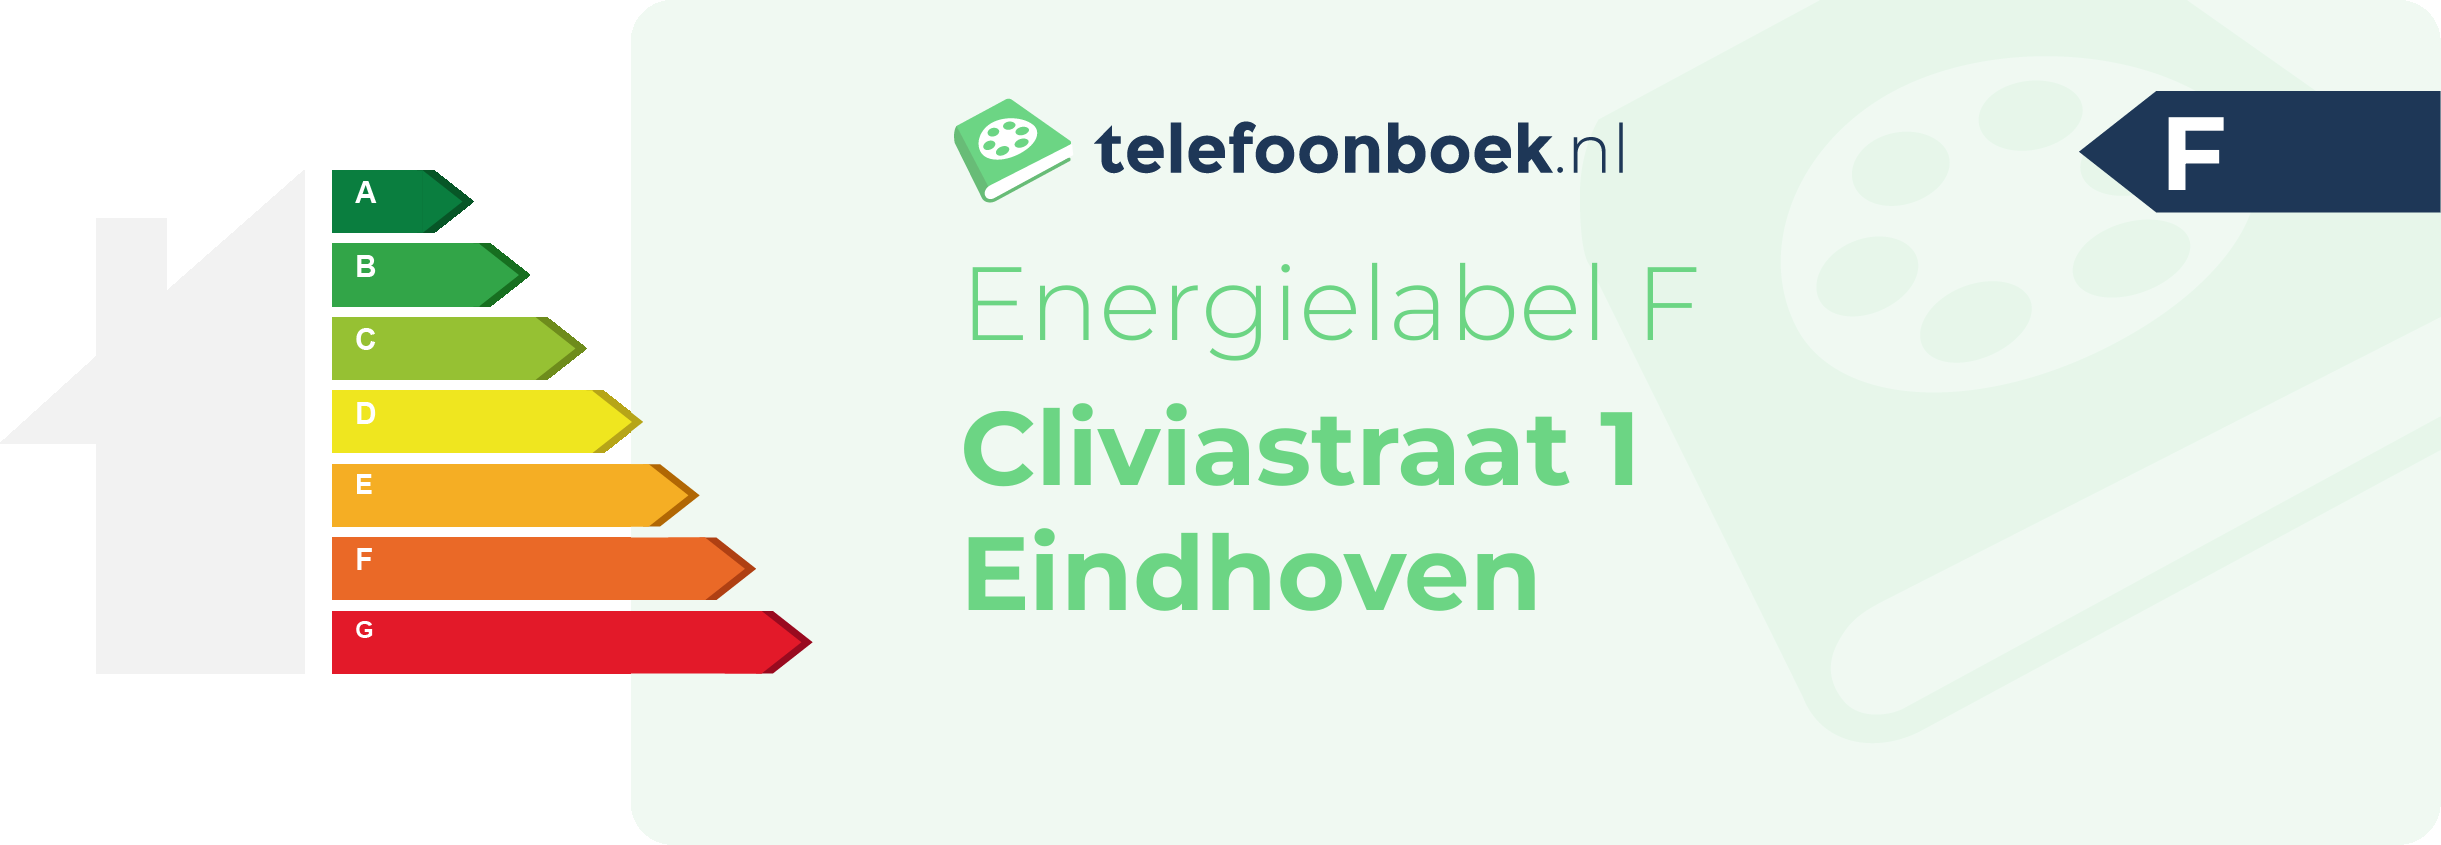 Energielabel Cliviastraat 1 Eindhoven